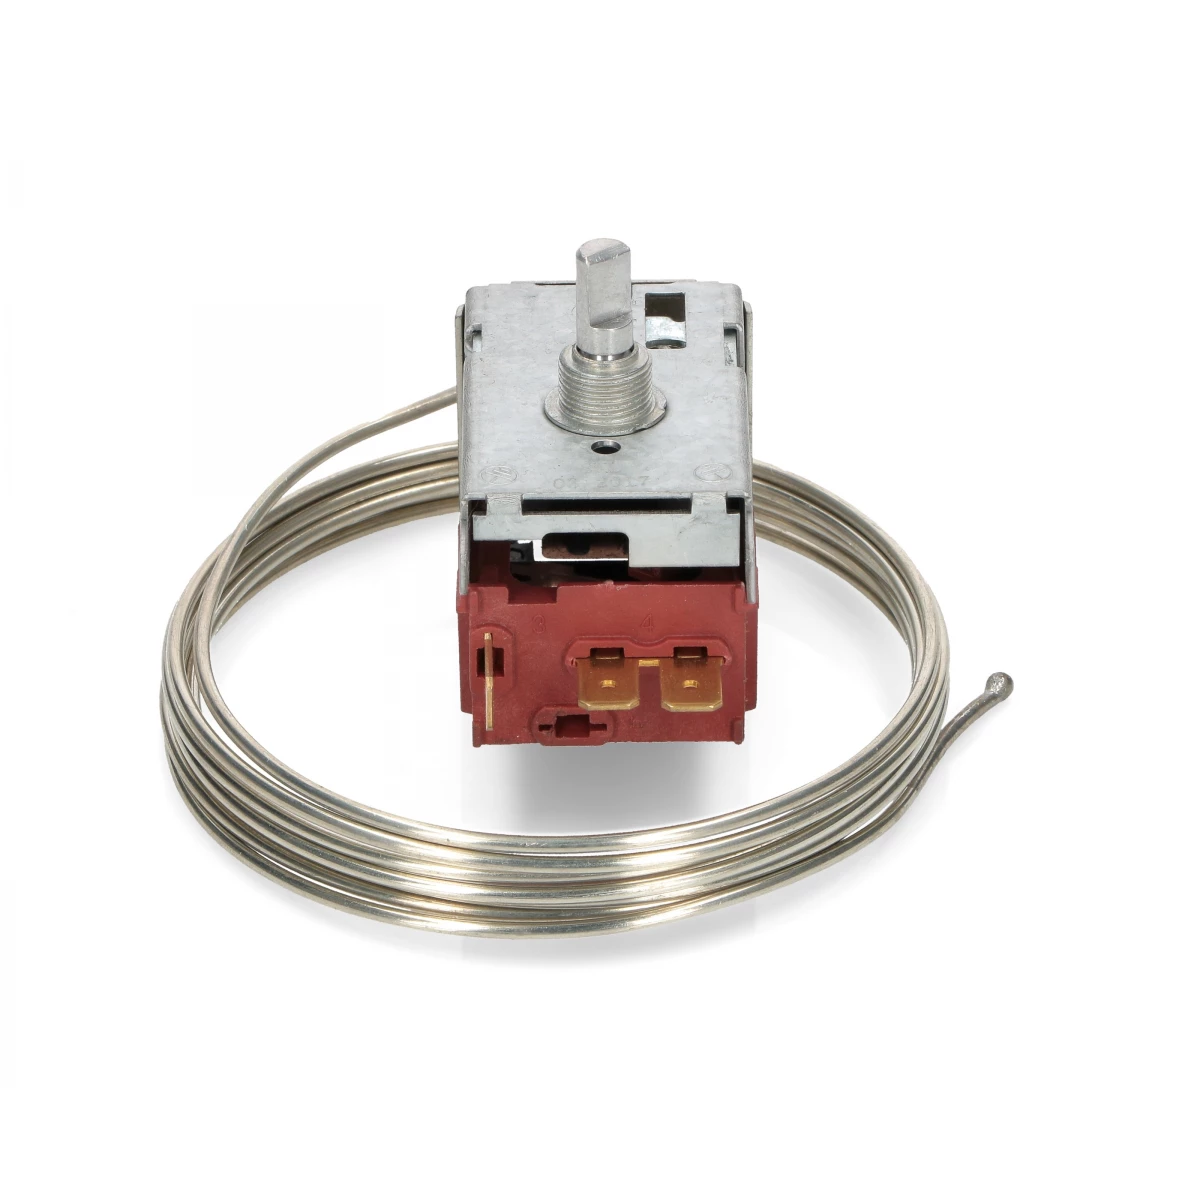 077B6697 K59 L1922 Thermostat Kit for MIELE Danfoss Ranco Fridge Freezer 